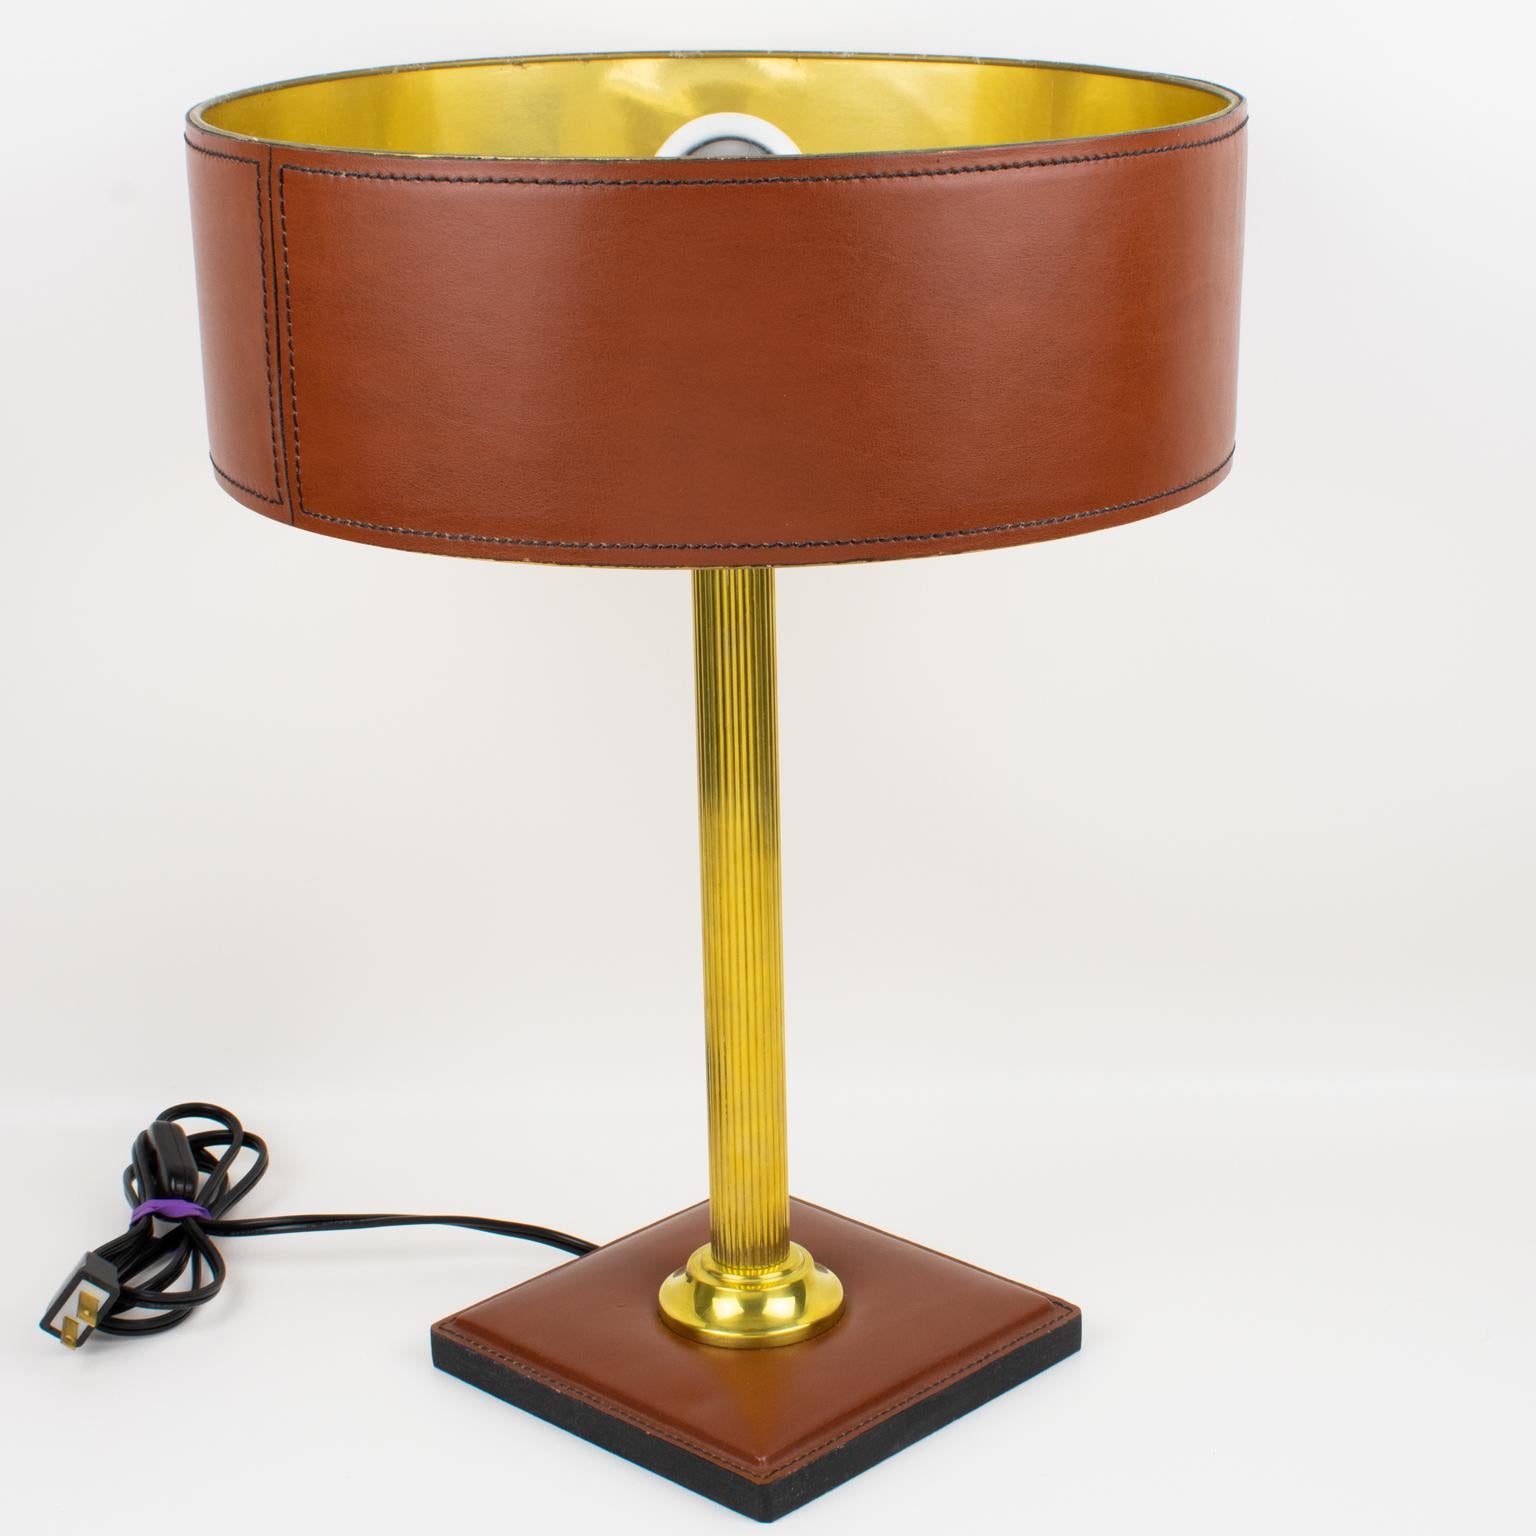 Cette élégante lampe de table a été conçue par Jacques Adnet (1901 - 1984). Cette lampe classique de couleur brun cannelle est dotée d'un abat-jour cousu à la main avec une doublure en papier doré, d'une tige à colonne cannelée en laiton poli et